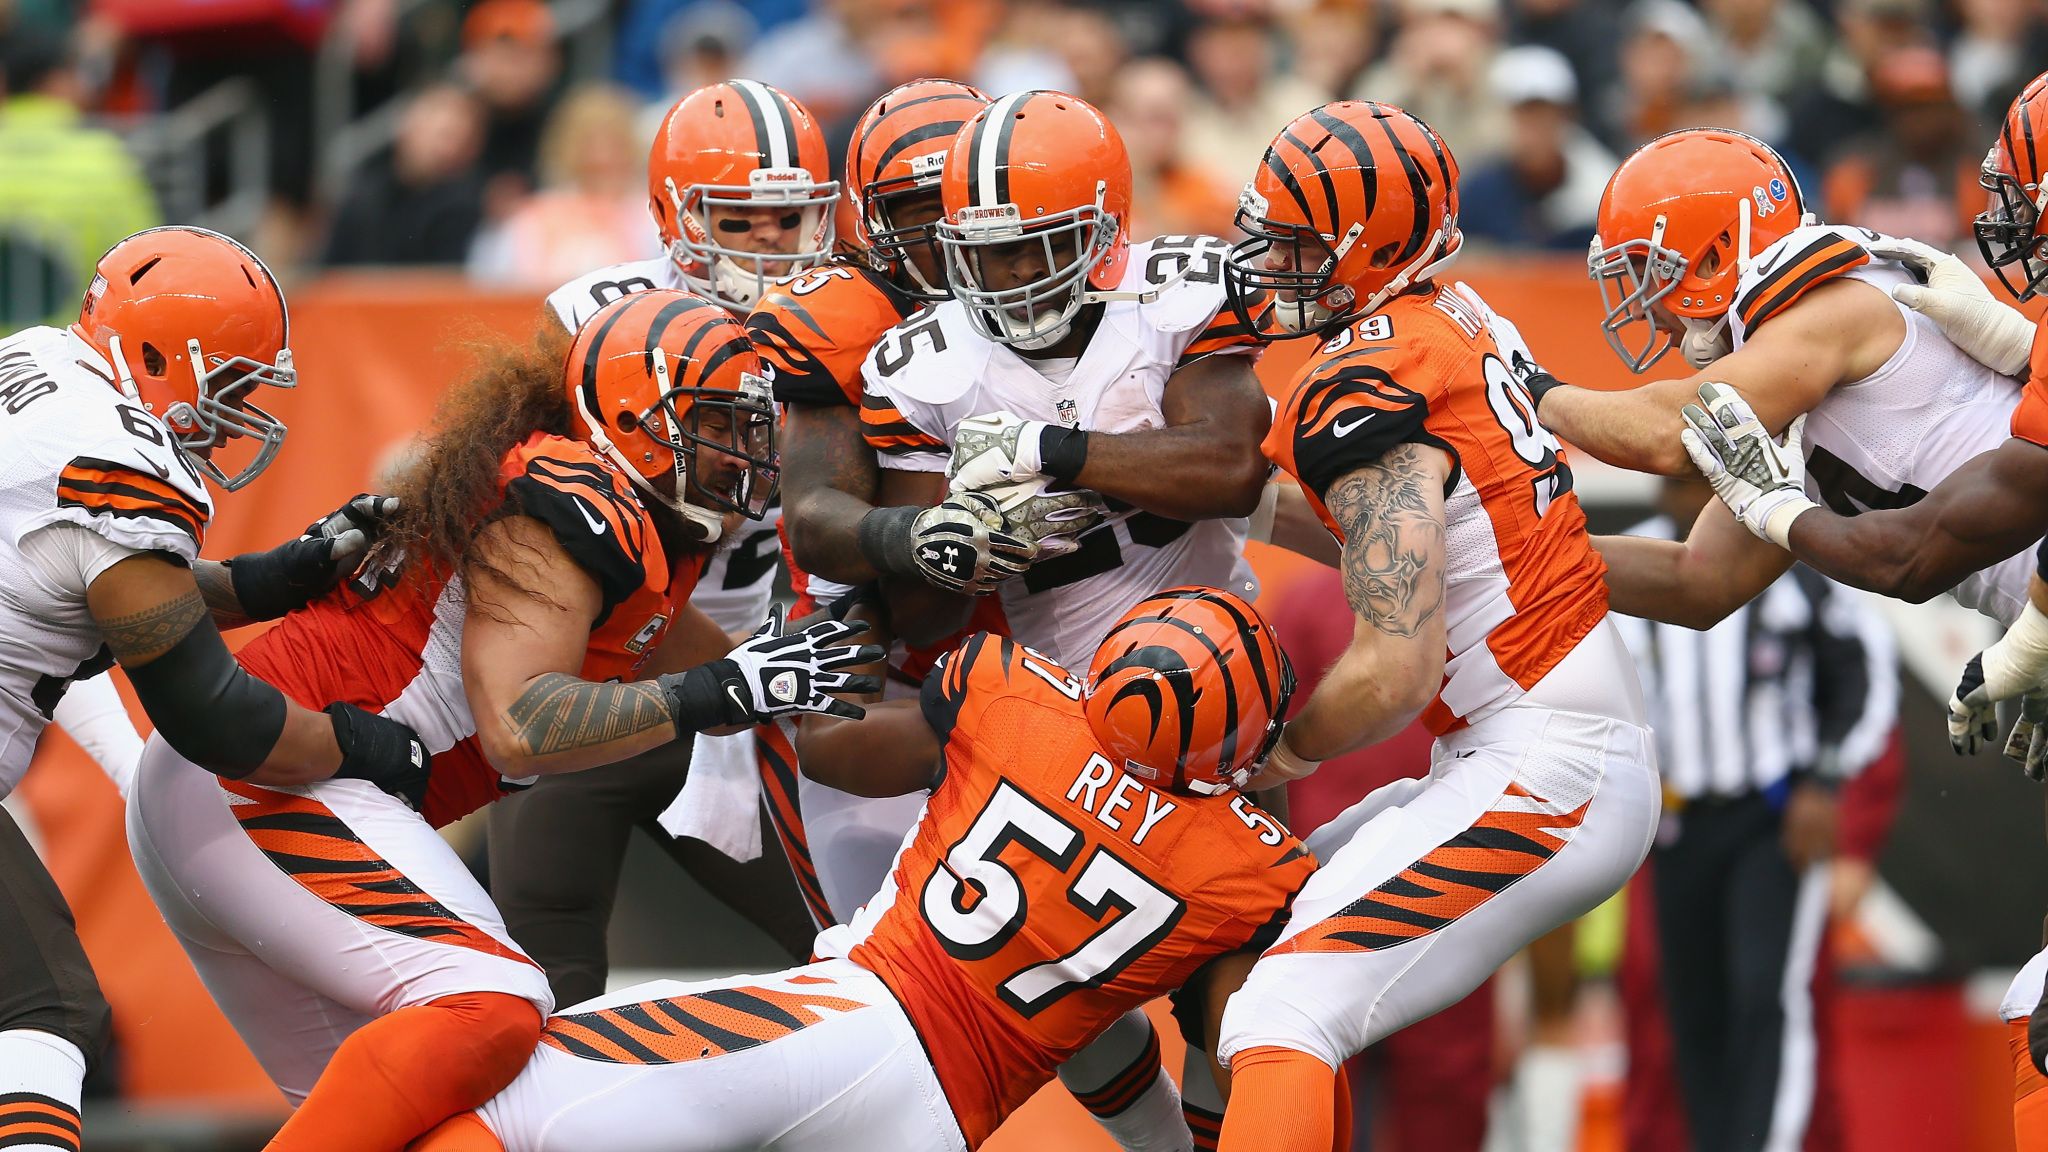 NFL: Cincinnati Bengals recover to beat divisional rivals